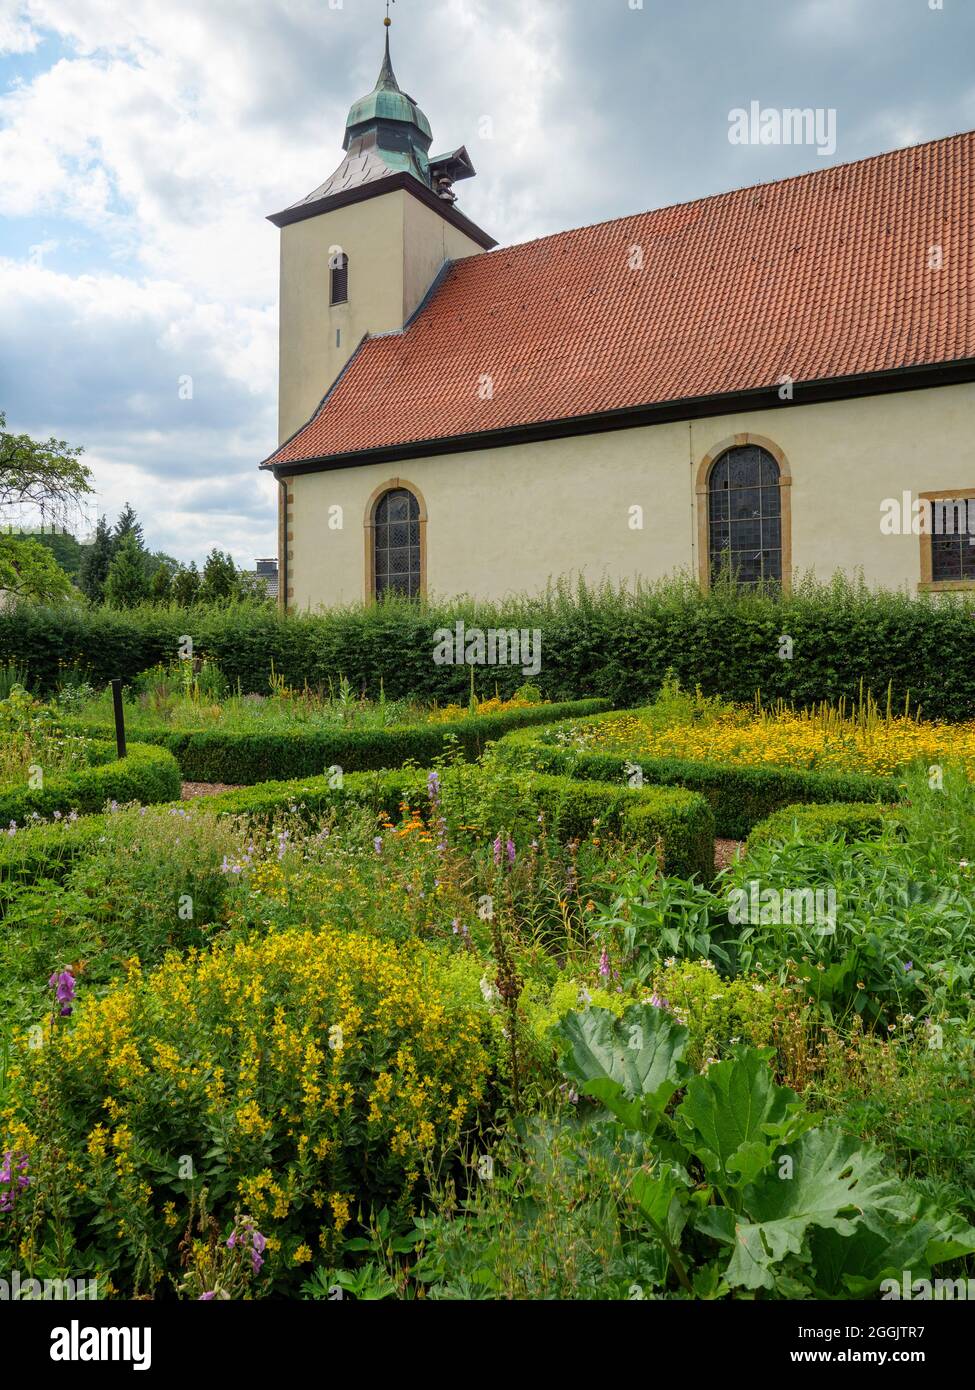 Cottage garden at the Christ Church, Belm, Osnabrück, Osnabrücker Land, Lower Saxony, Germany Stock Photo